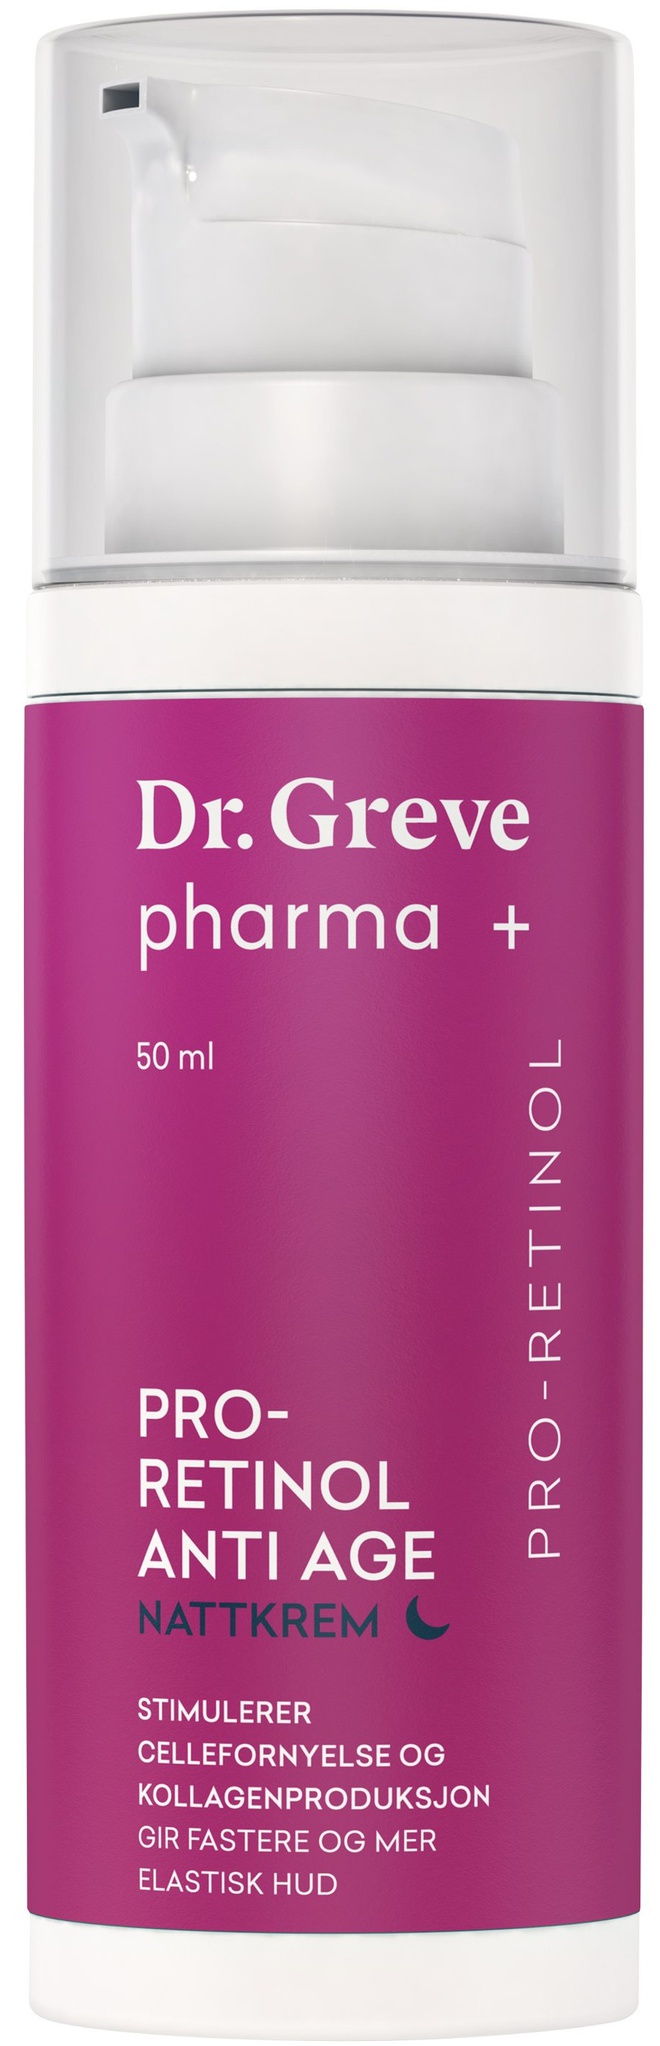 Dr. Greve pharma + Pro-retinol Anti Age Nattkrem